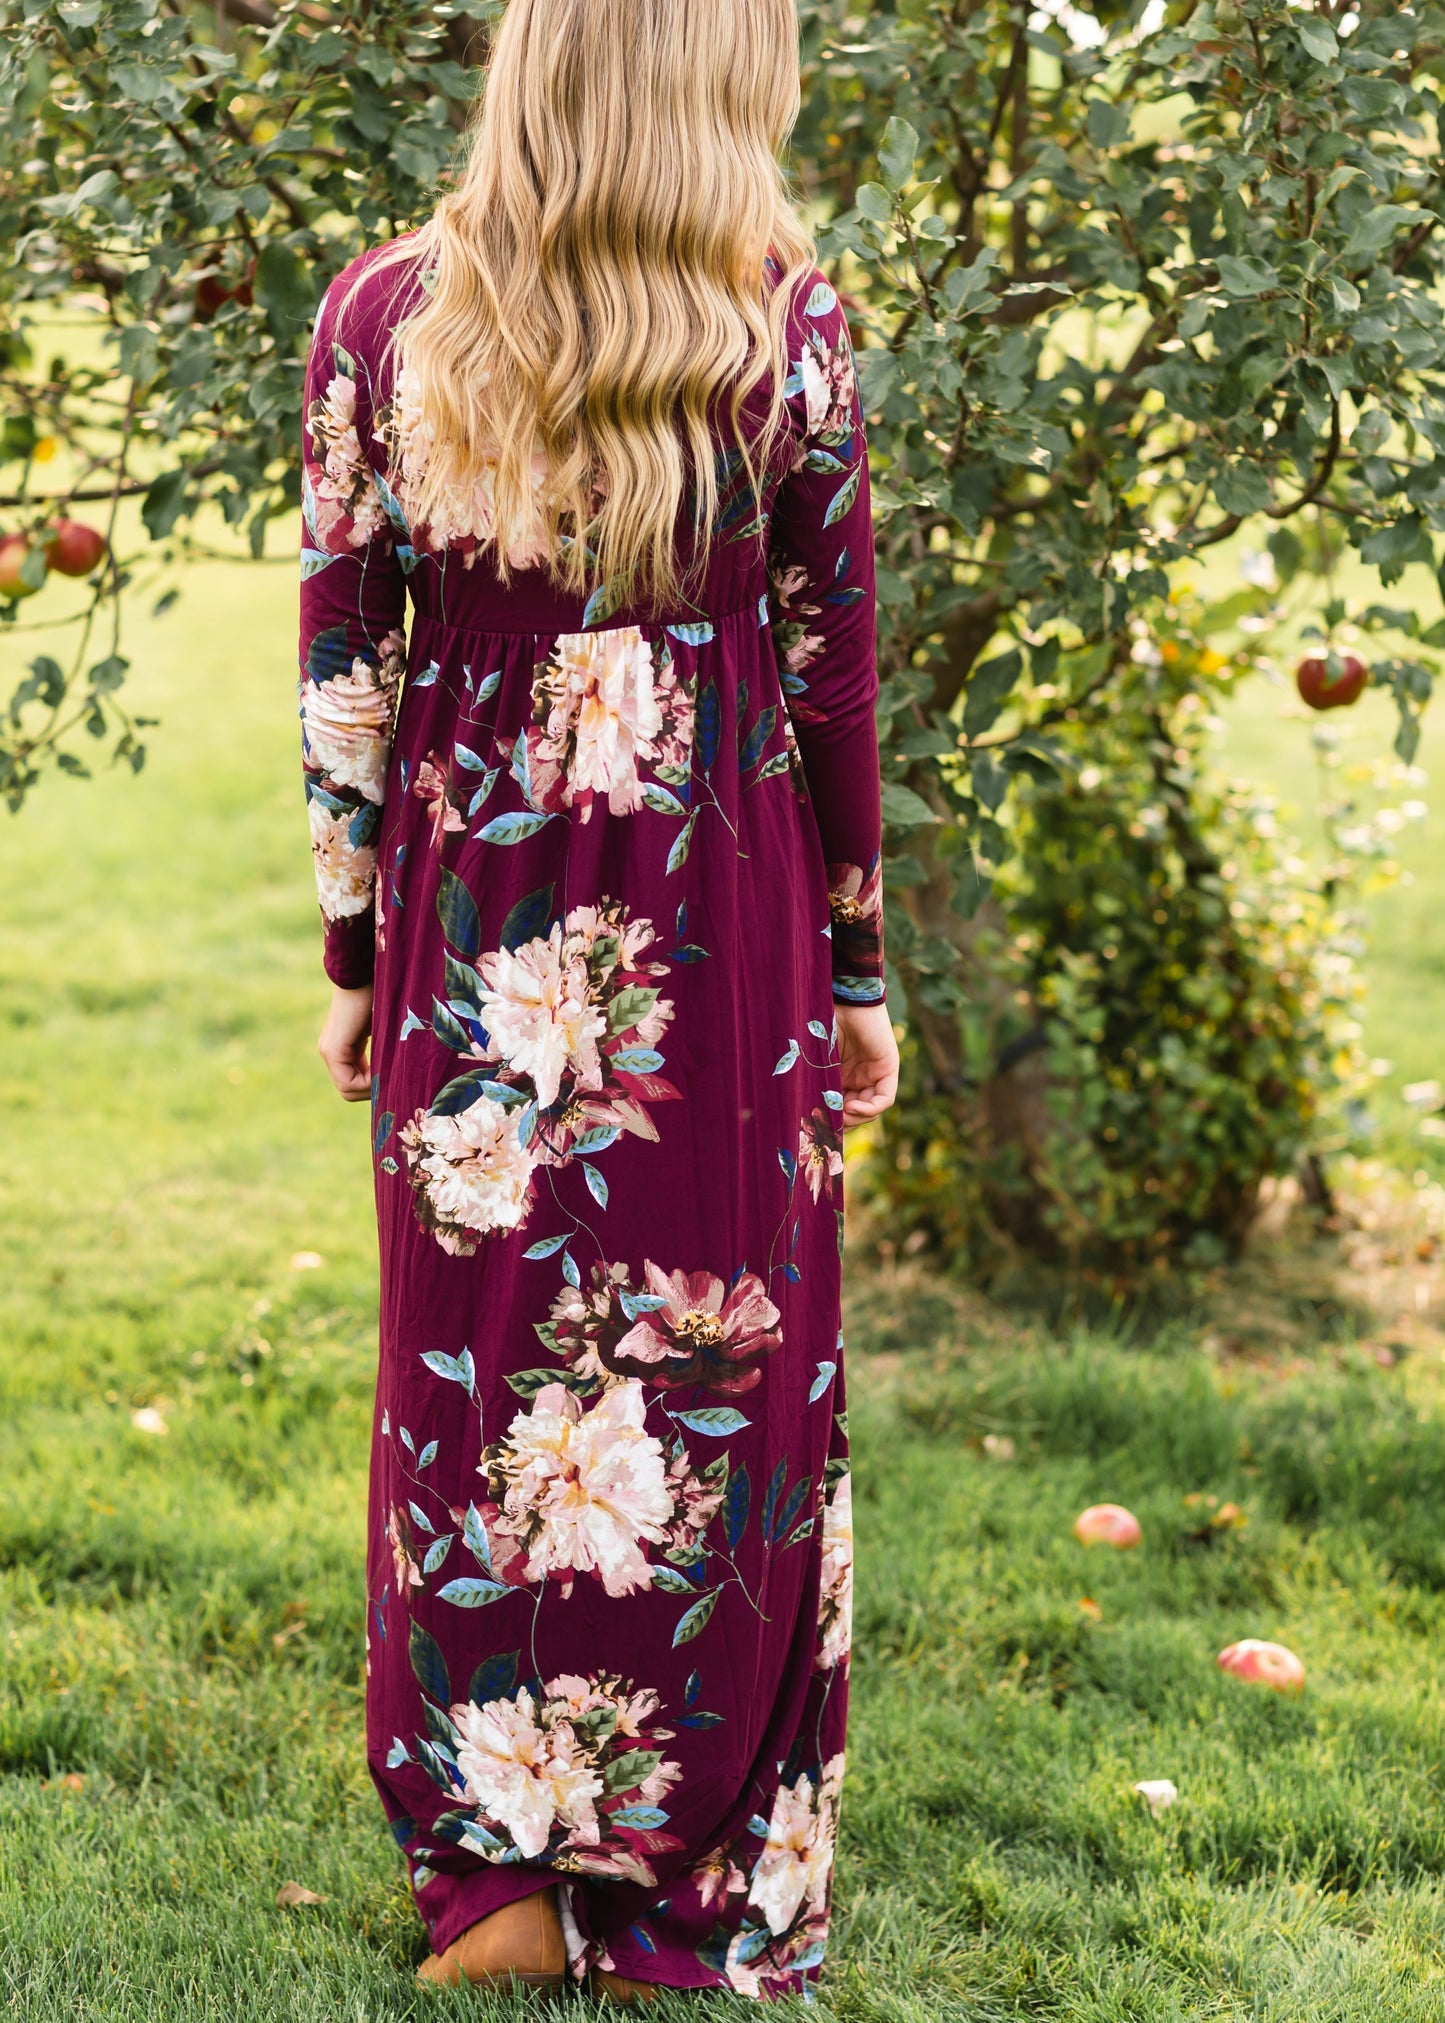 Burgandy Twist Front Floral Maxi Dress - FINAL SALE Dresses